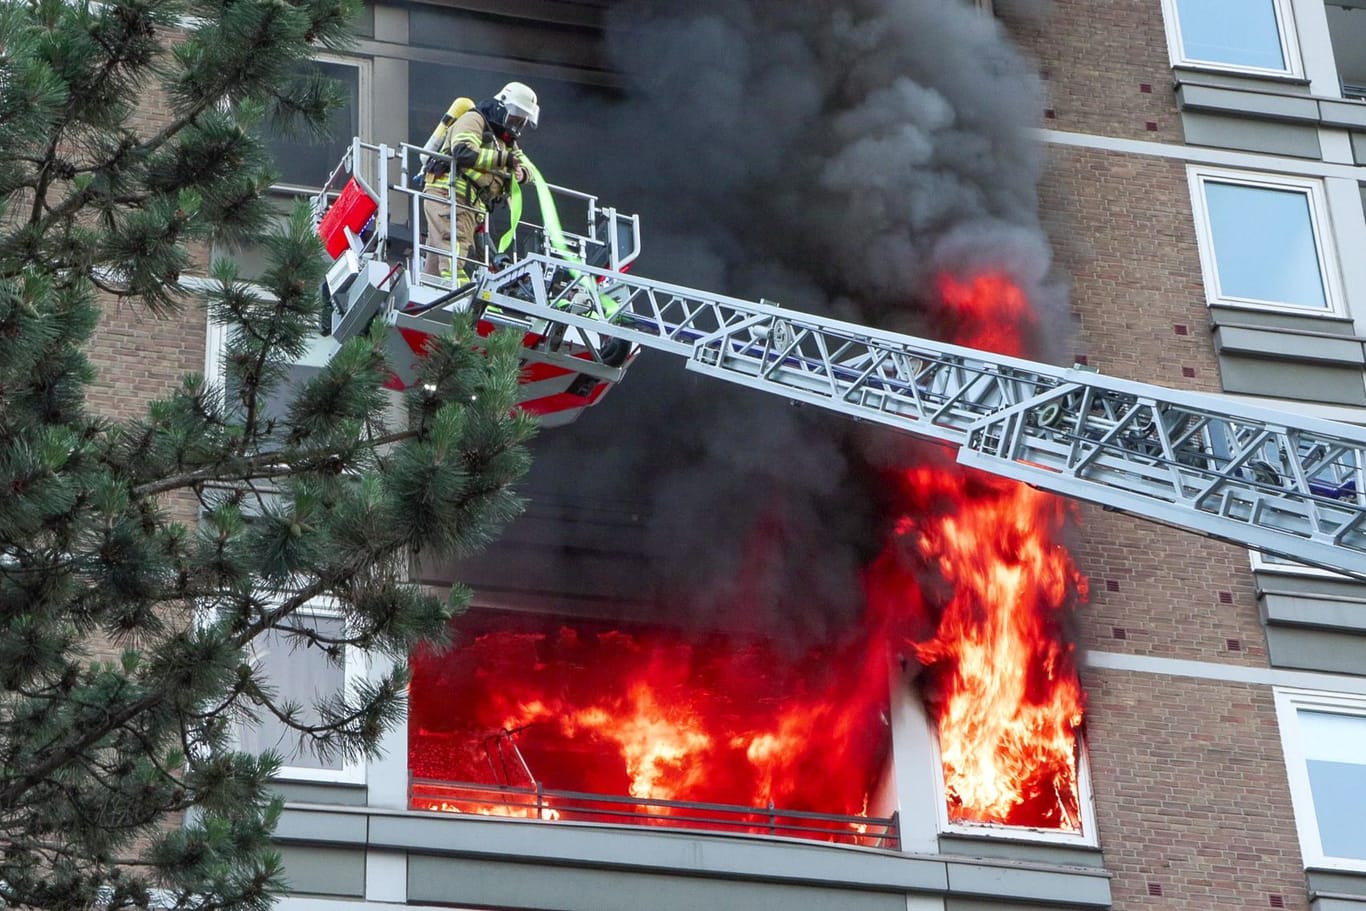 Wohnungsvollbrand in einem Mehrfamilienhaus - Meterhohe Flammen